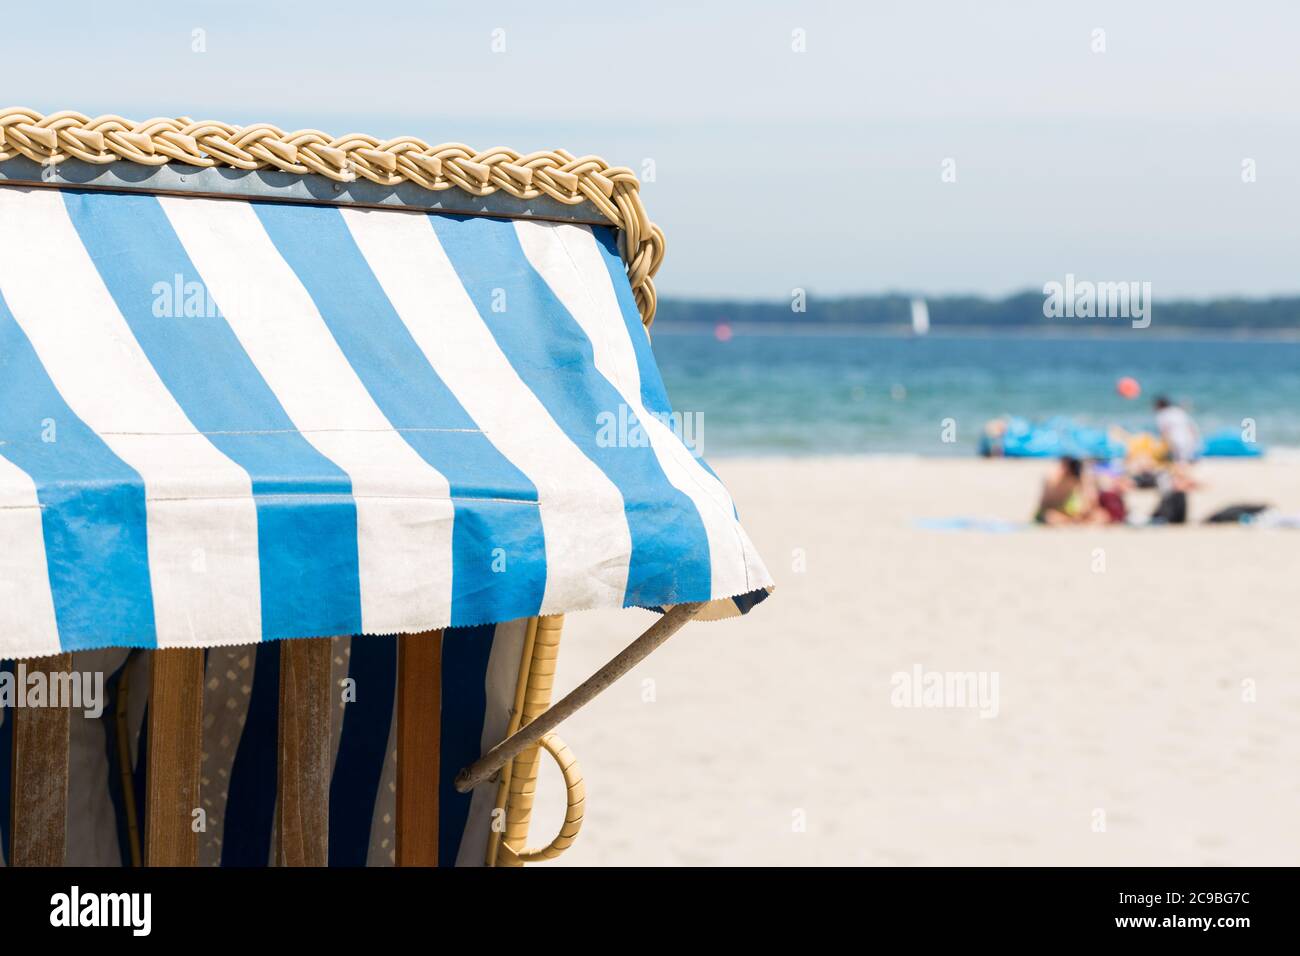 Détail d'un Strandkorb (chaise de plage en osier). La plage, la mer Baltique et les touristes en arrière-plan. Banque D'Images